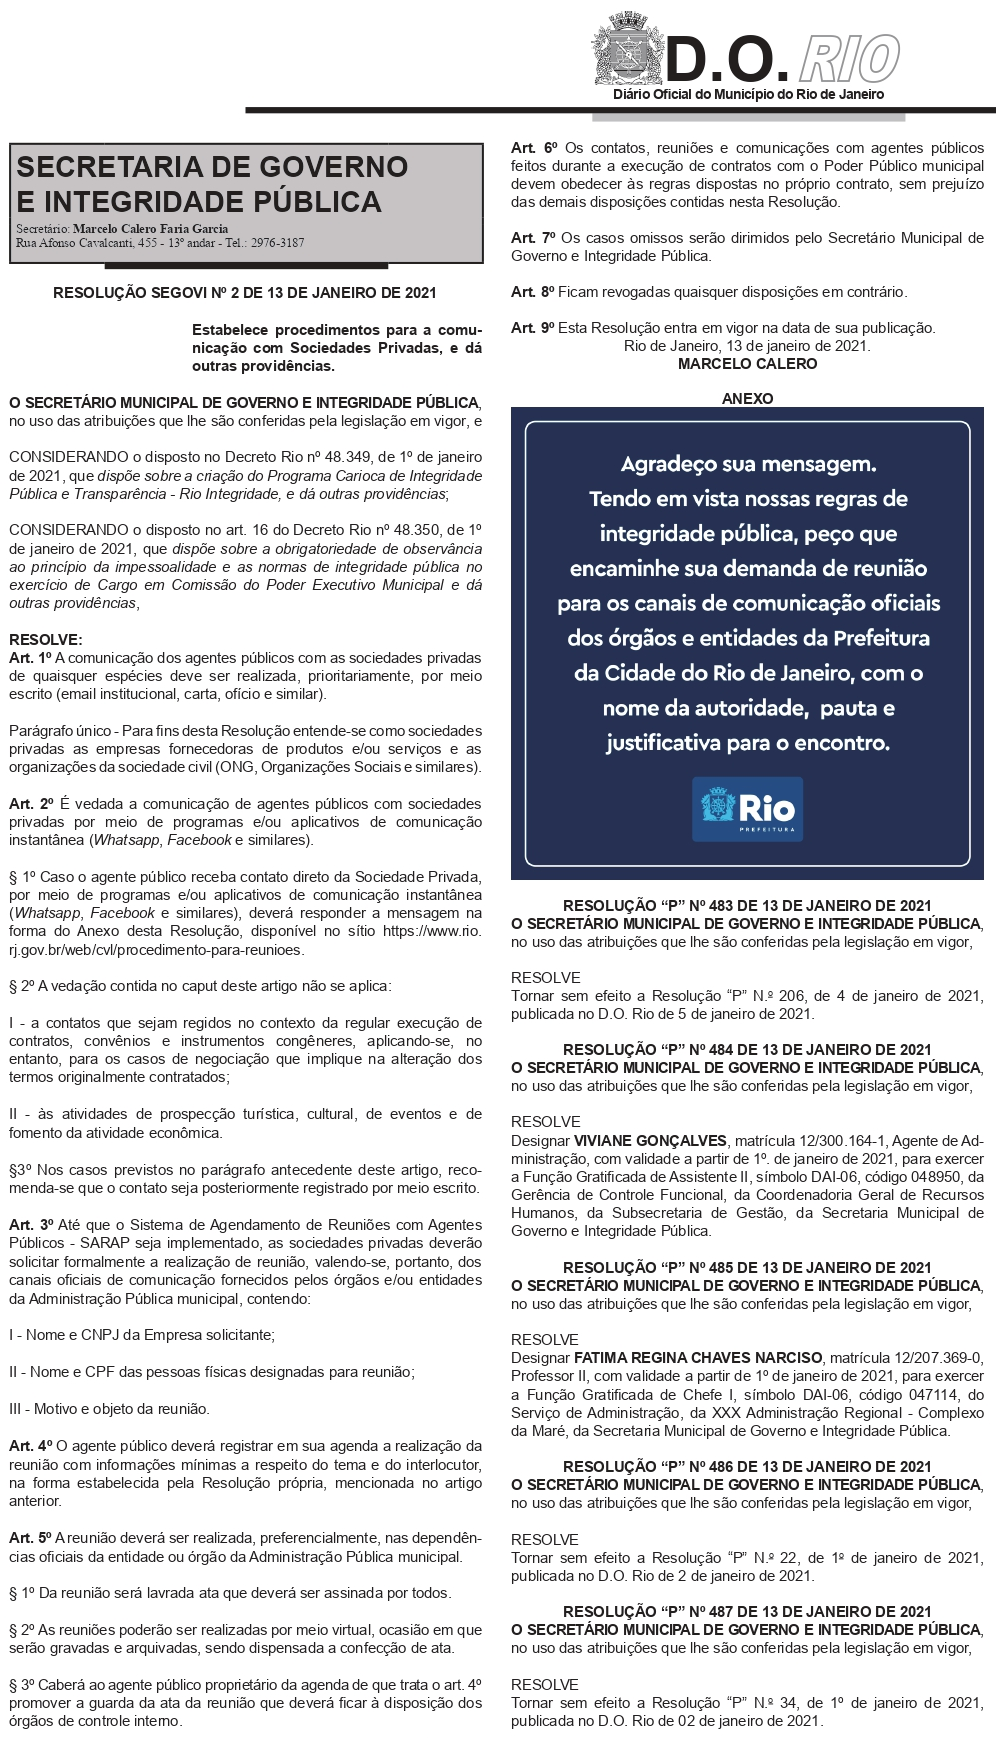 Vollständige Entschließung aus dem Amtsblatt von Rio de Janeiro.